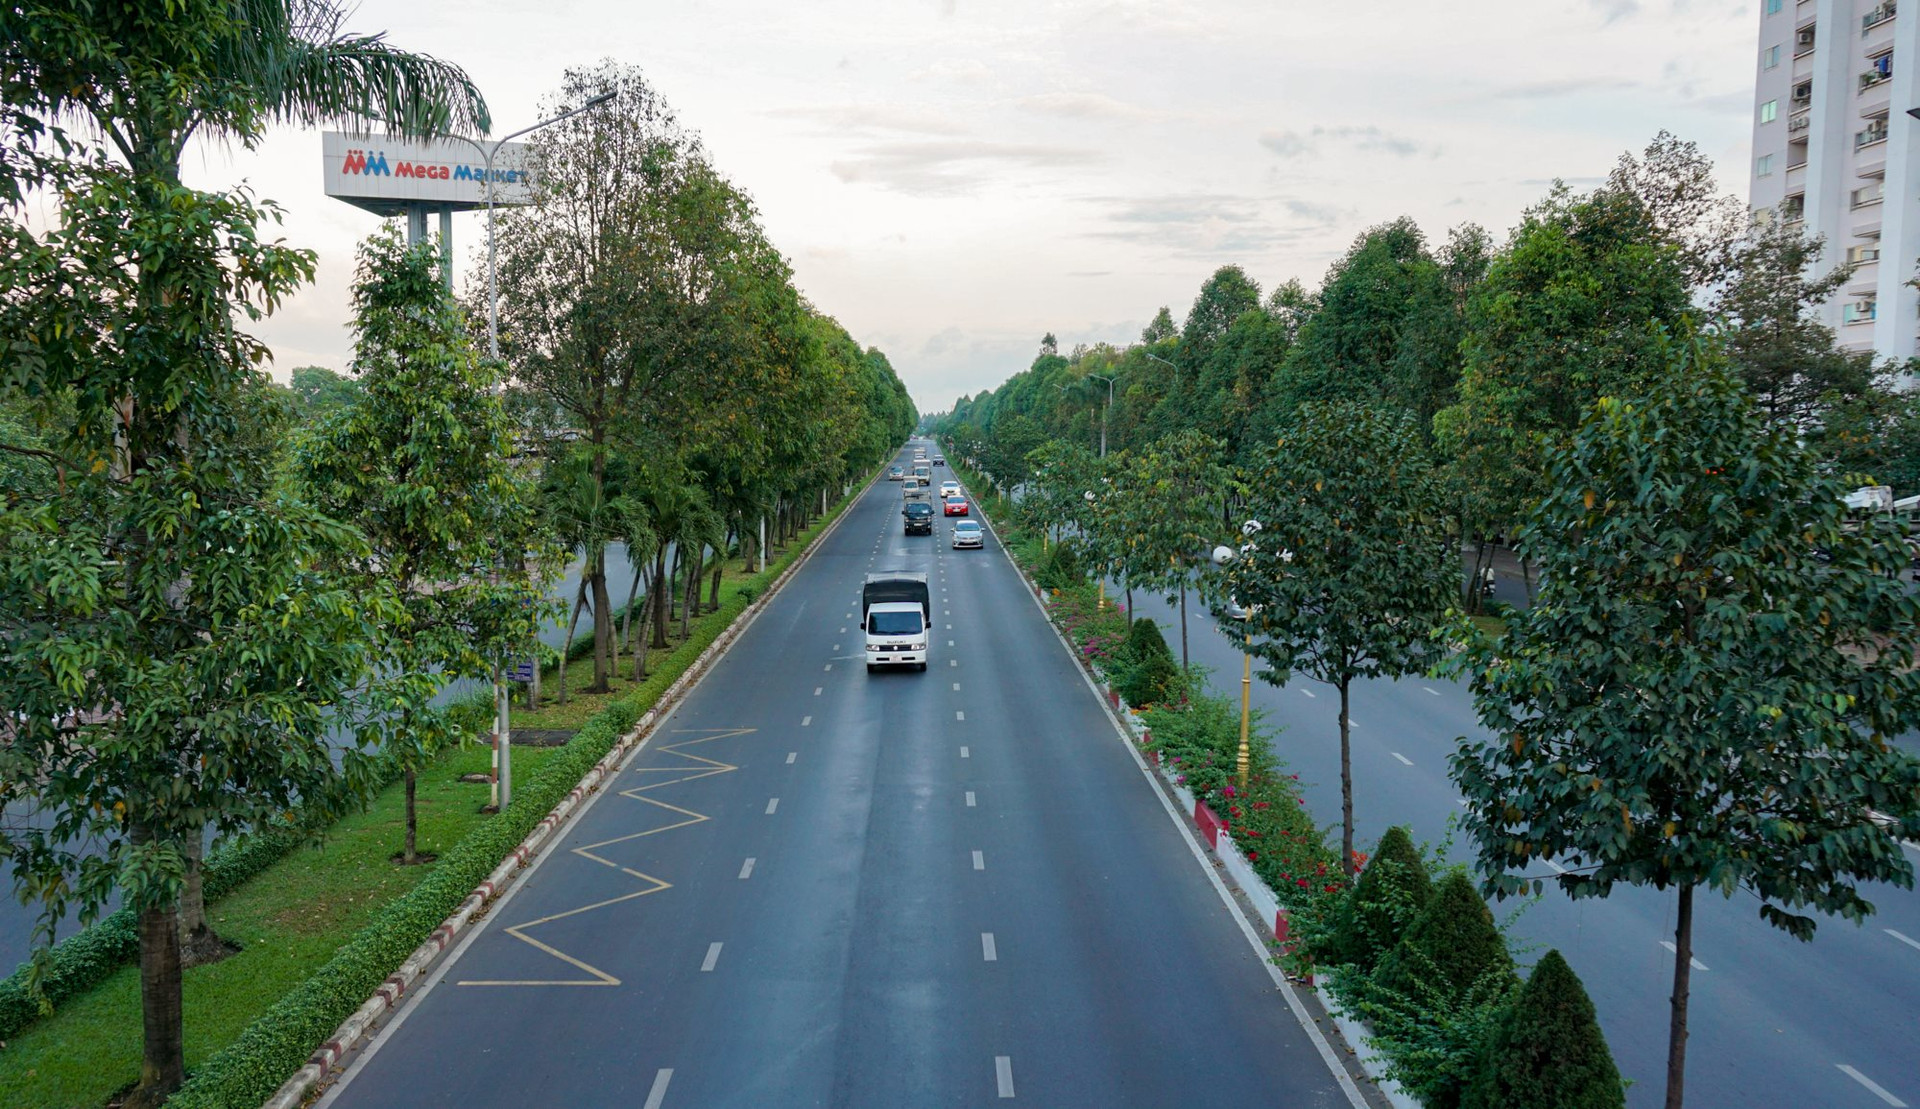 Thành phố trực thuộc tỉnh đông dân nhất Việt Nam, ngang Cần Thơ, Đà Nẵng có gì đặc biệt?